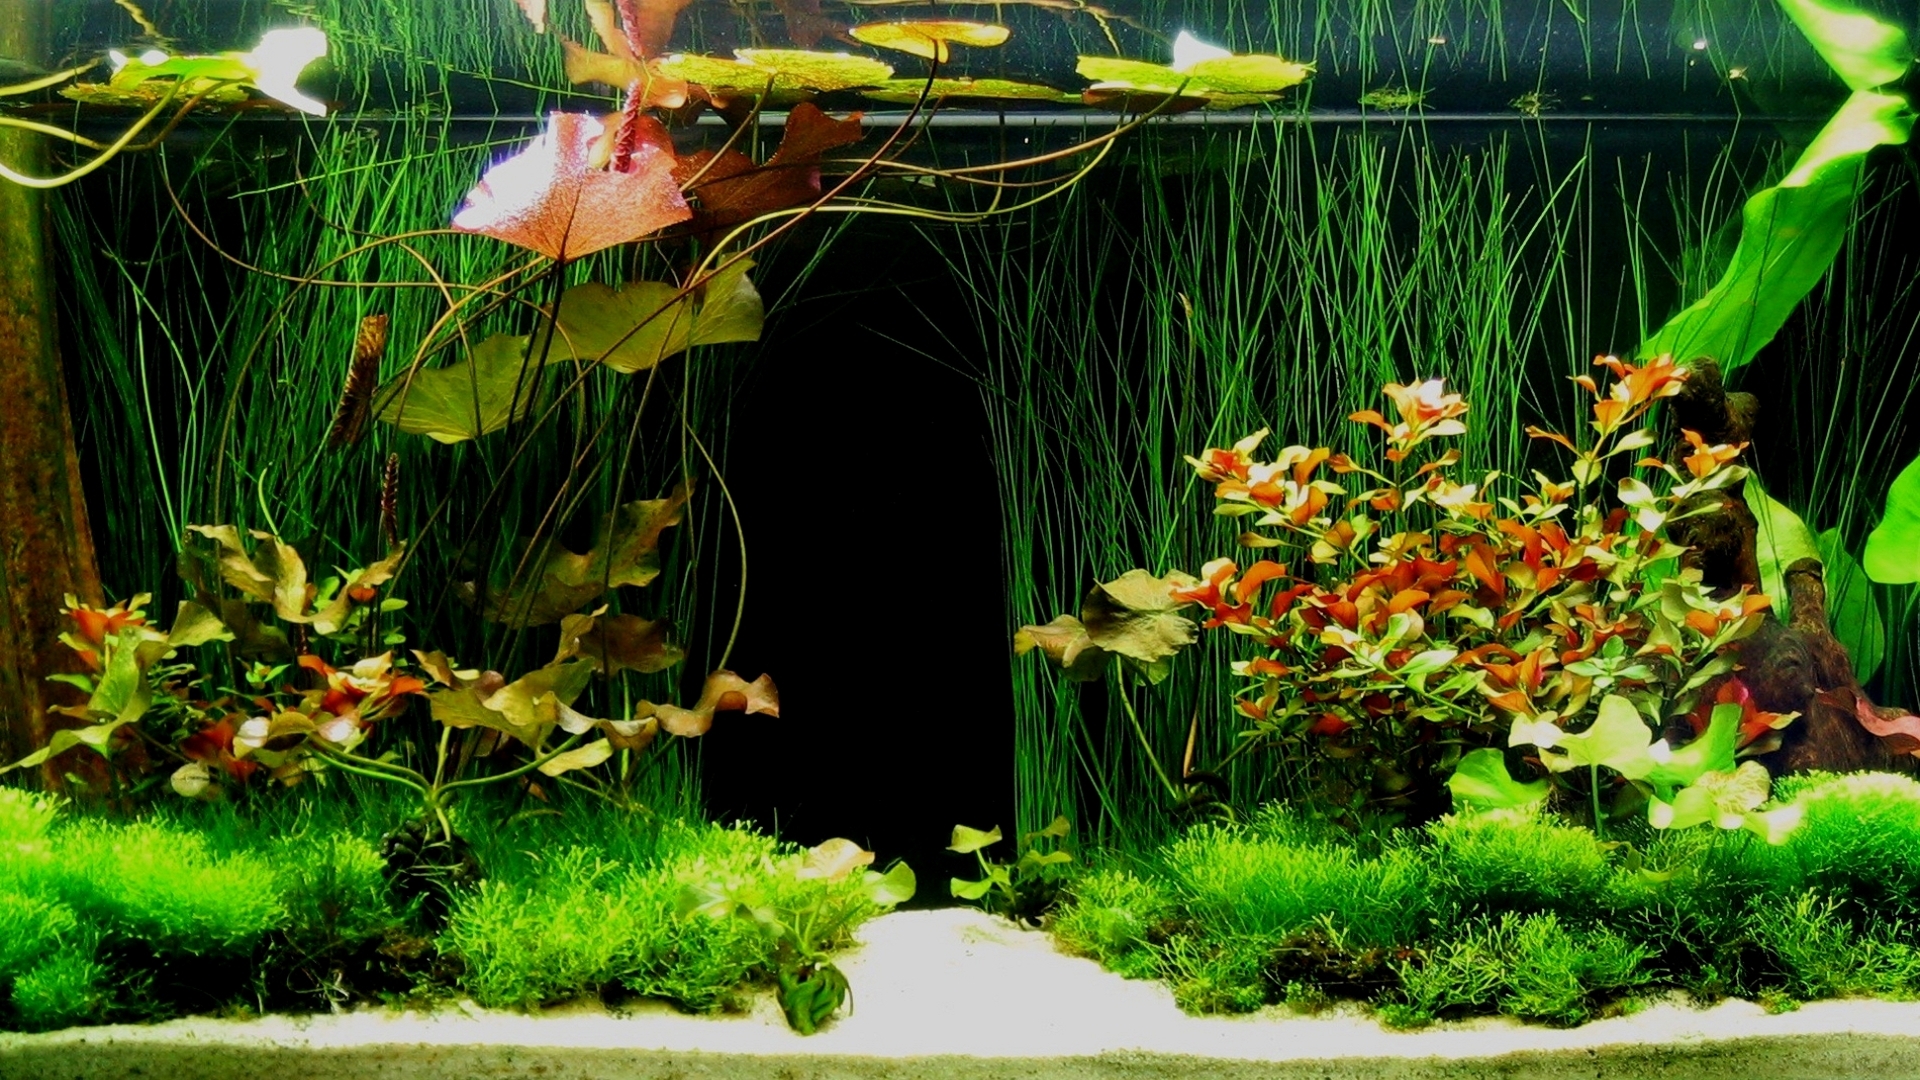 Aquarium Background Image